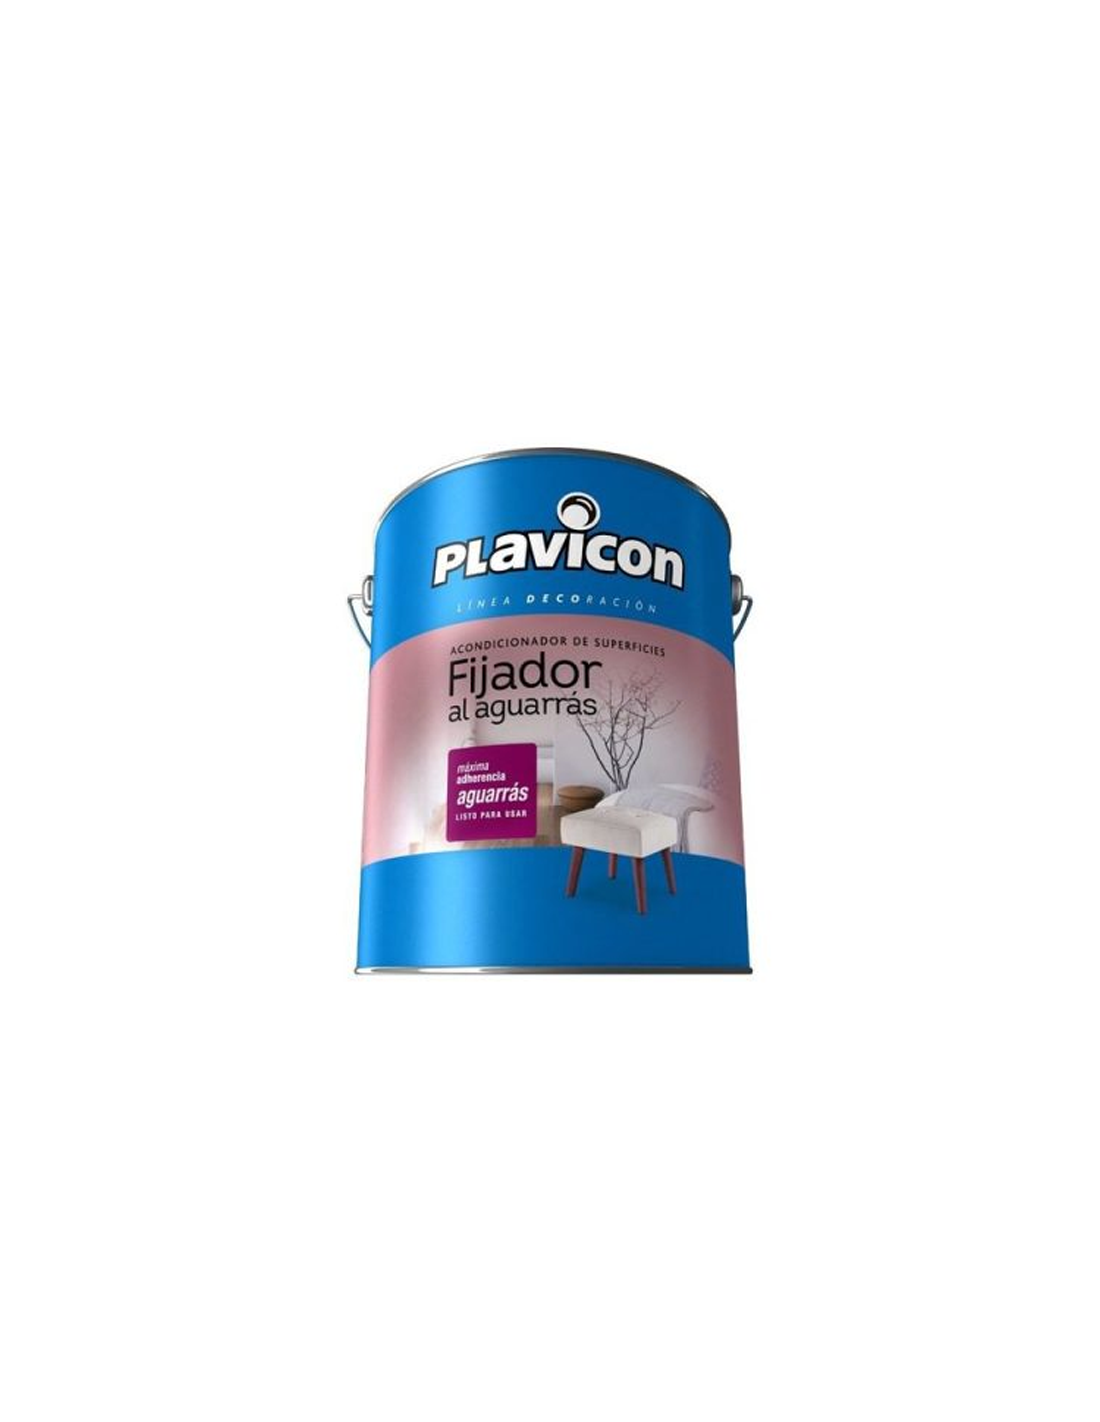 Plavicon